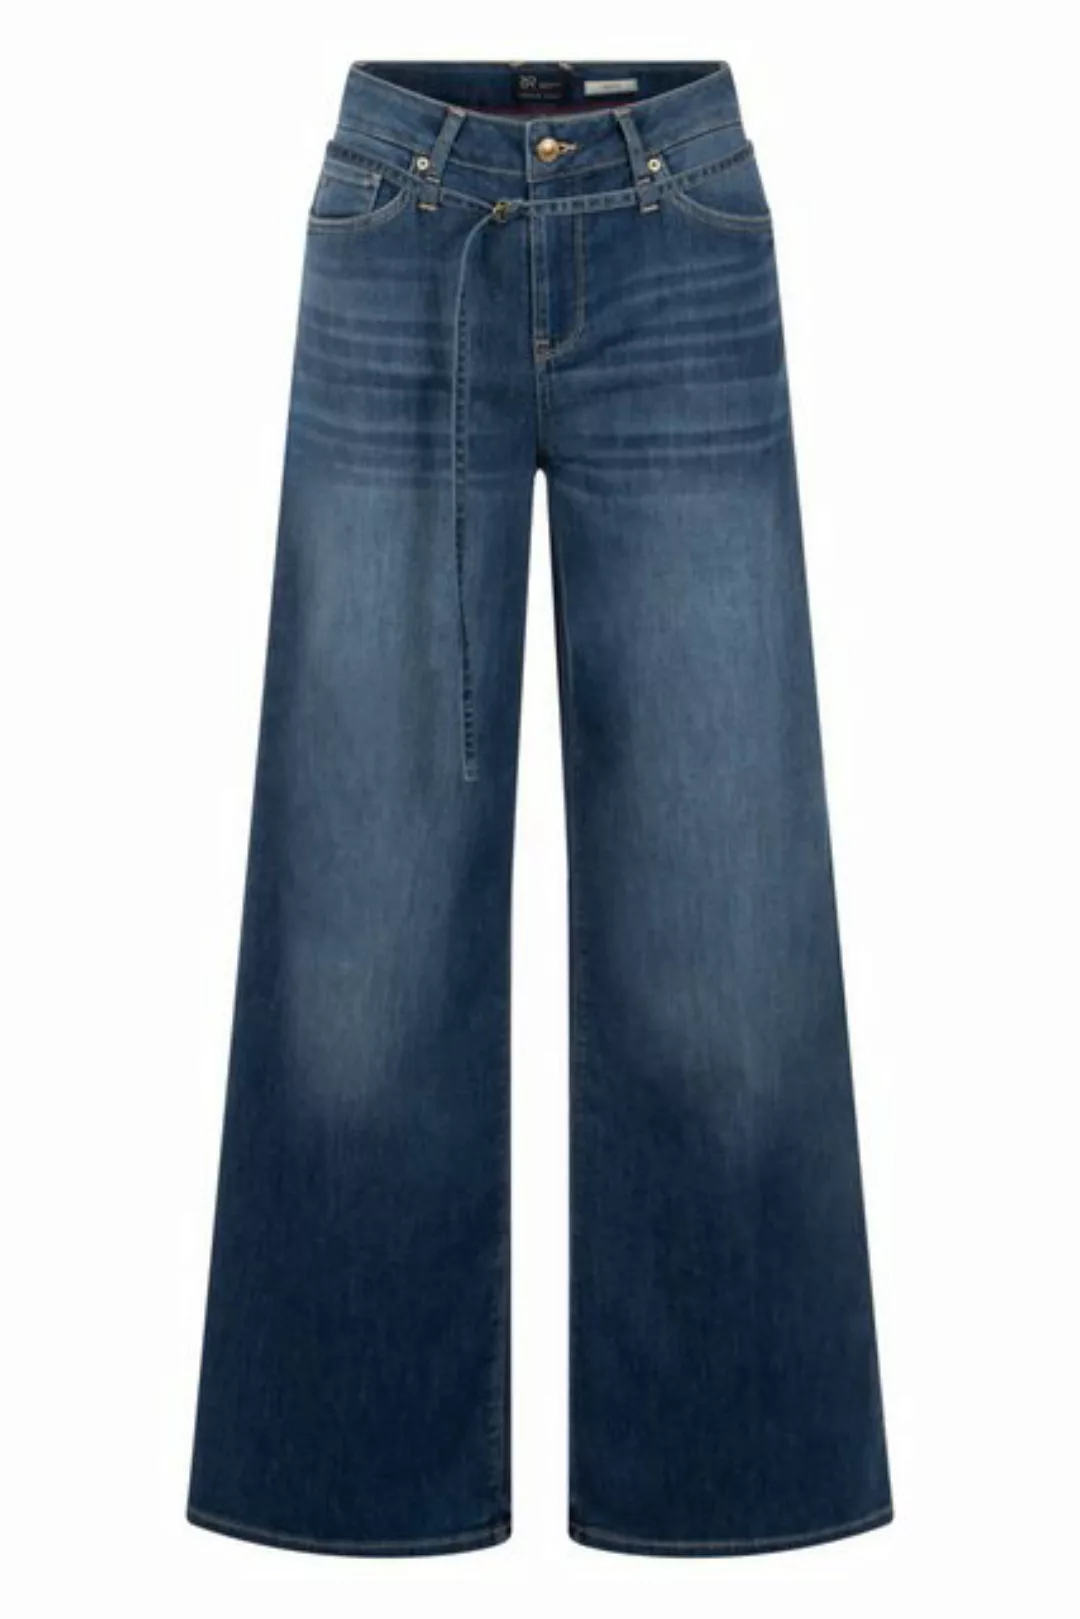 Raffaello Rossi 5-Pocket-Jeans Sventy B günstig online kaufen